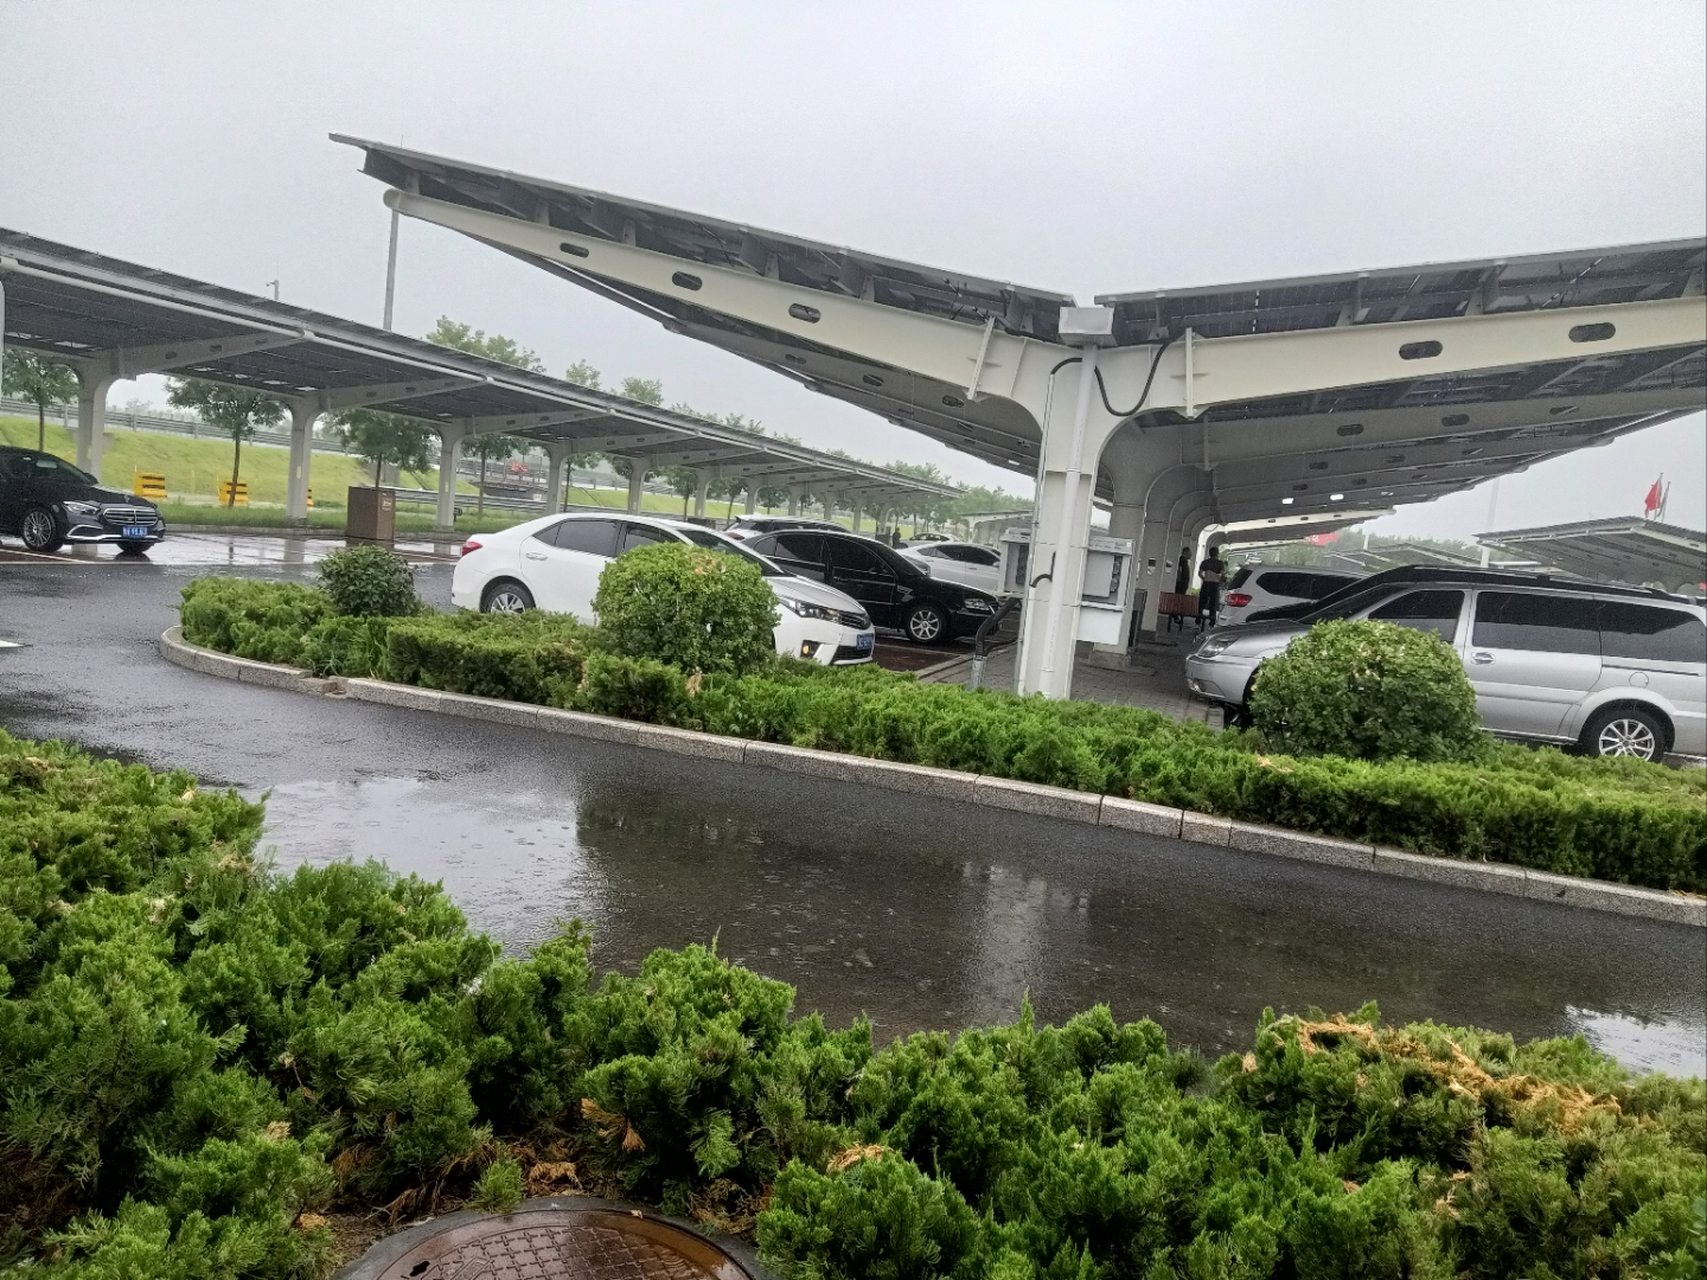 自驾游打卡……济青高速济南东服务区 最大亮点有车棚,顶棚是太阳能板